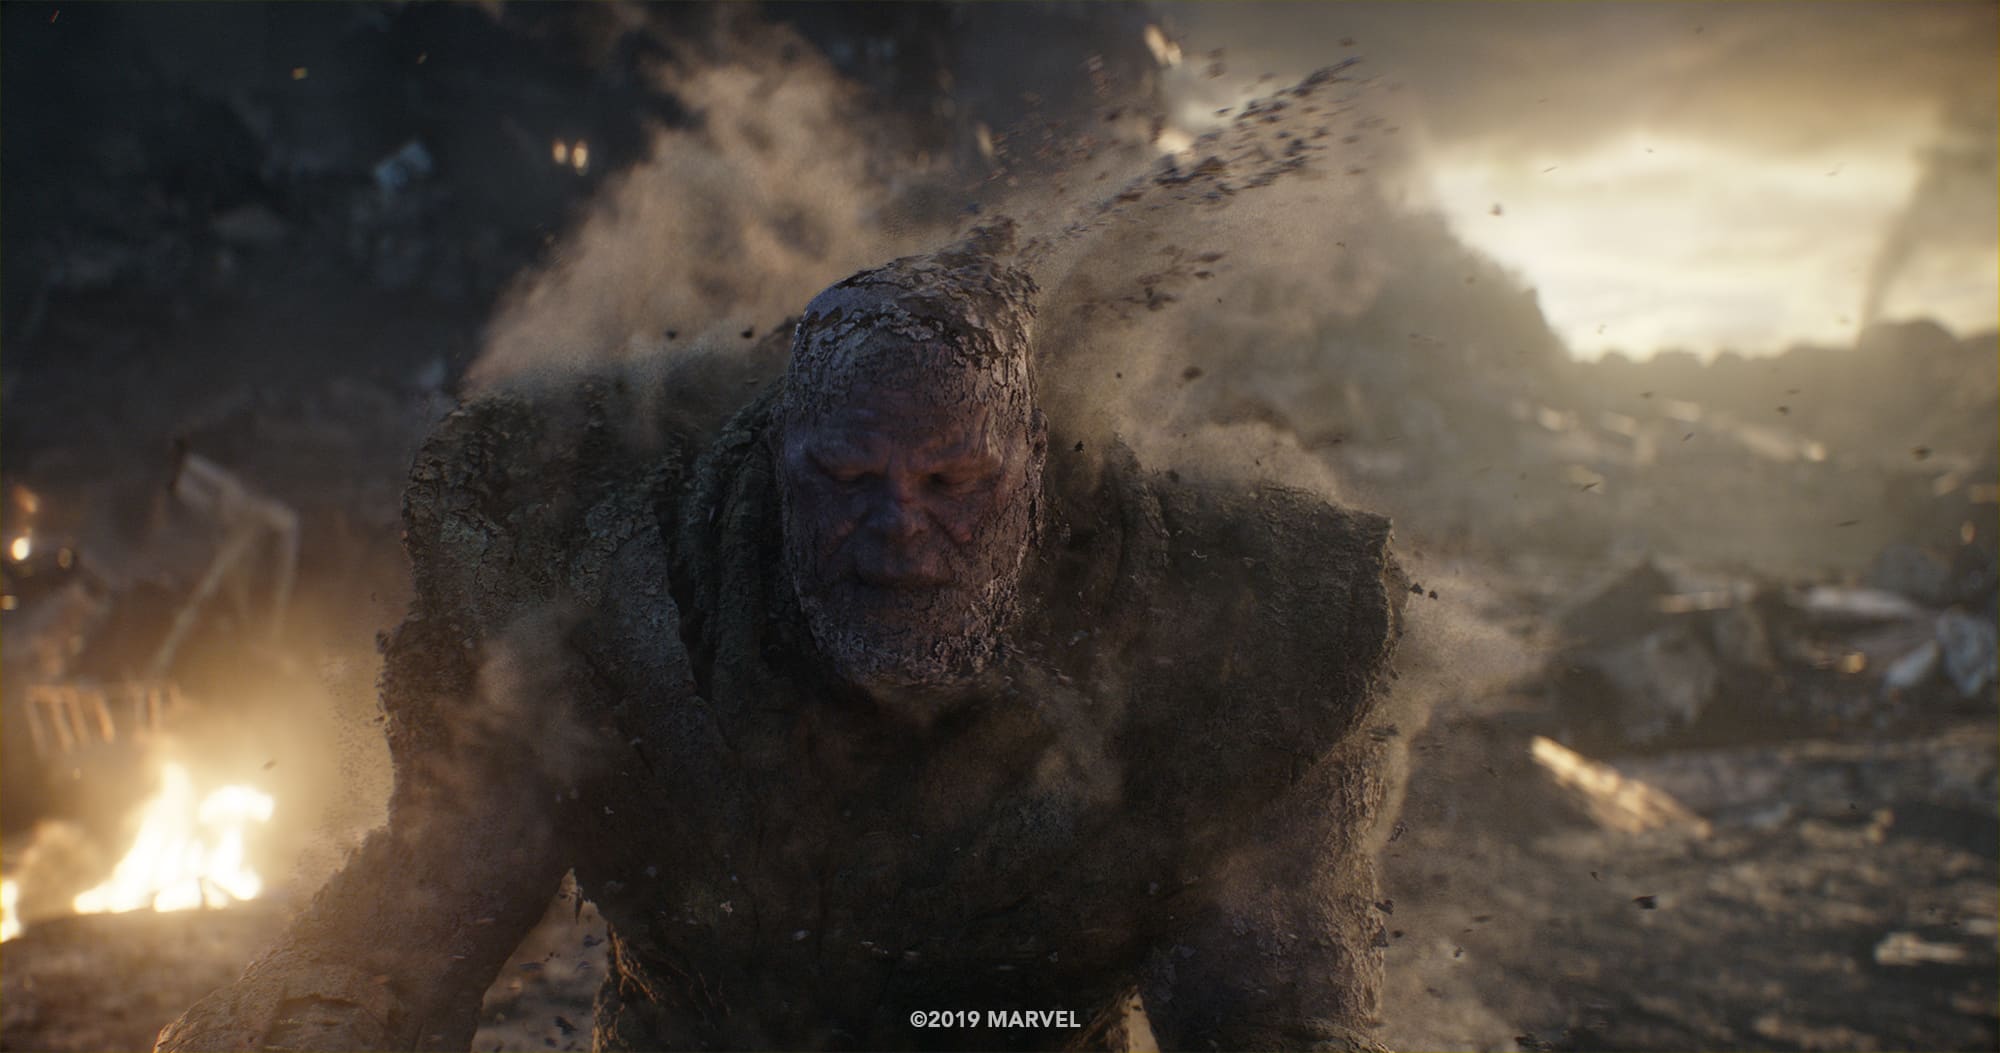 Captain Marvel vs Thanos Avengers: Endgame Image Released